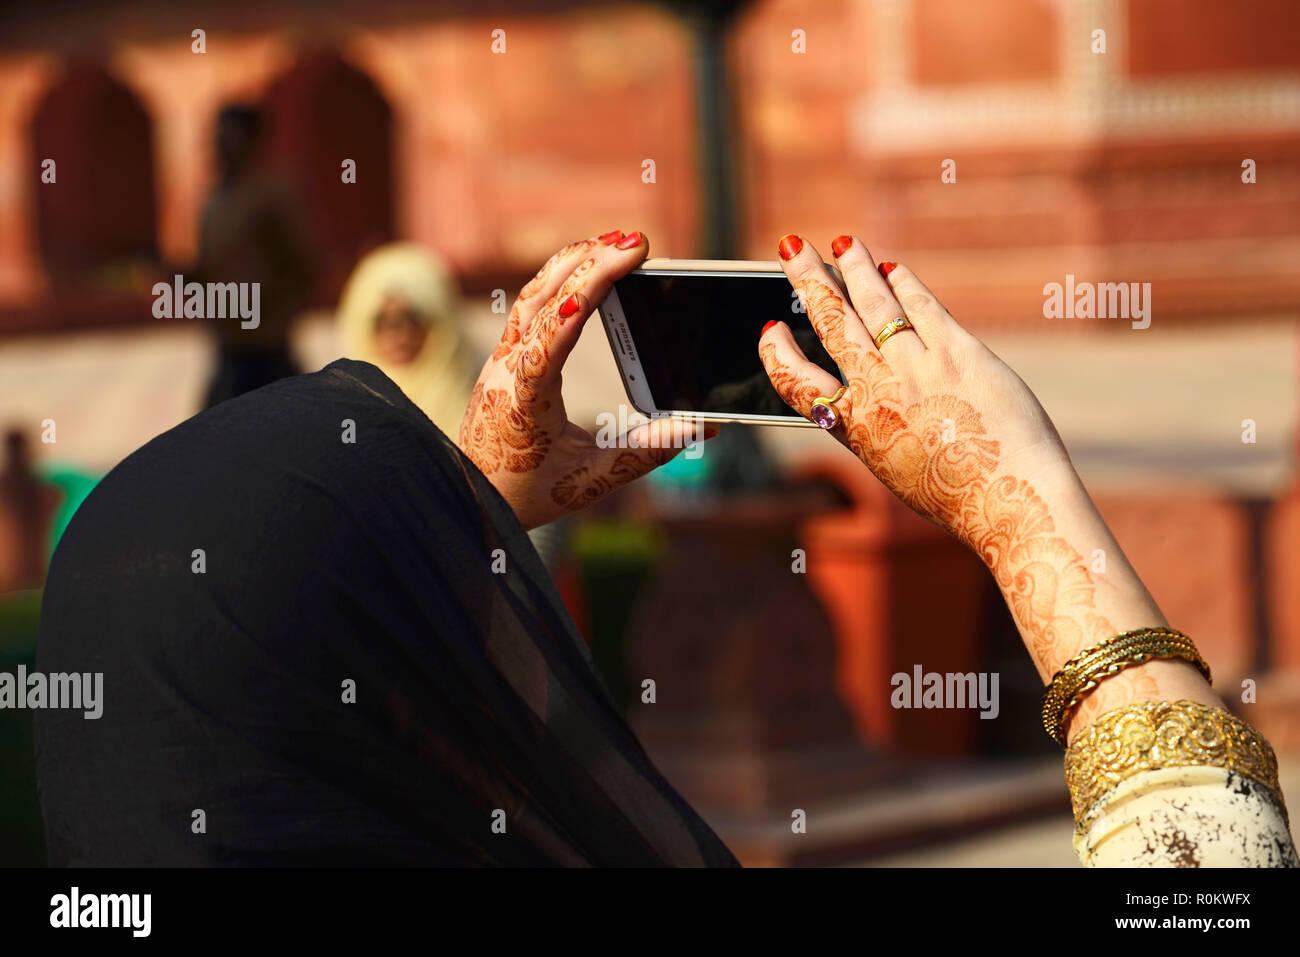 Mujer musulmana con manos decoradas con henna fotografiar con el smartphone, Uttar Pradesh, India Foto de stock